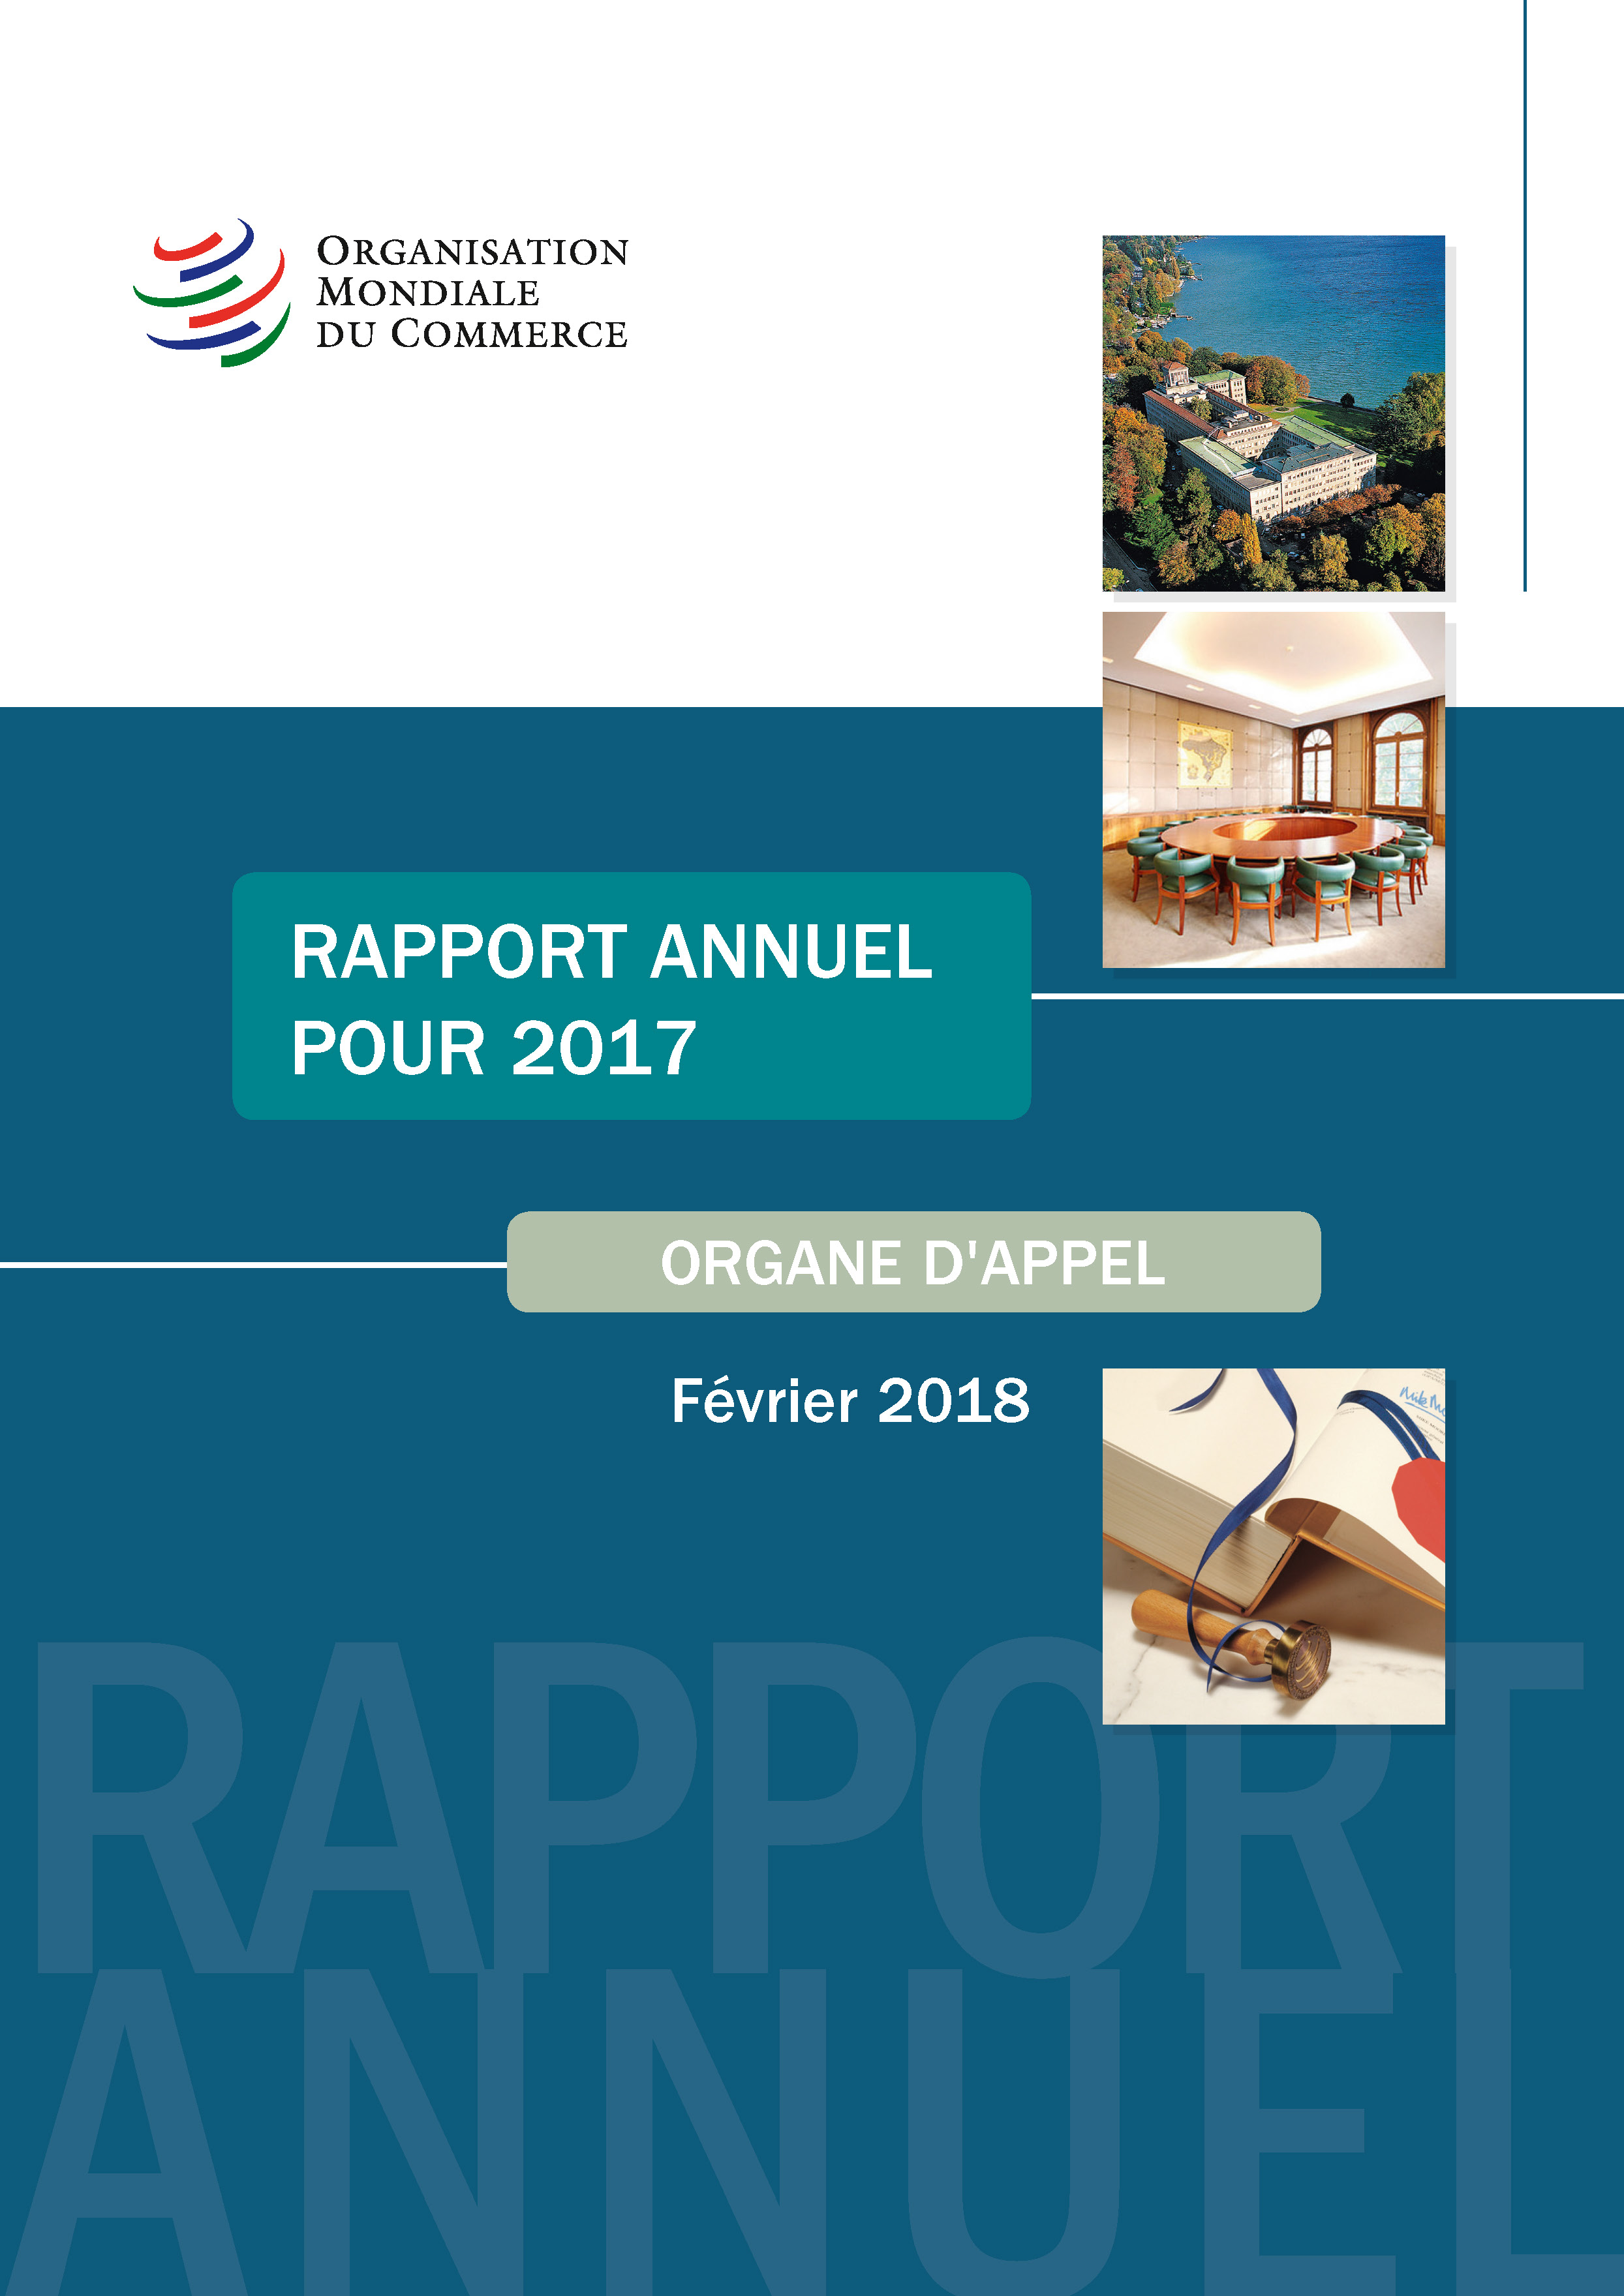 image of Rapport annuel de l’organe d’appel pour 2017